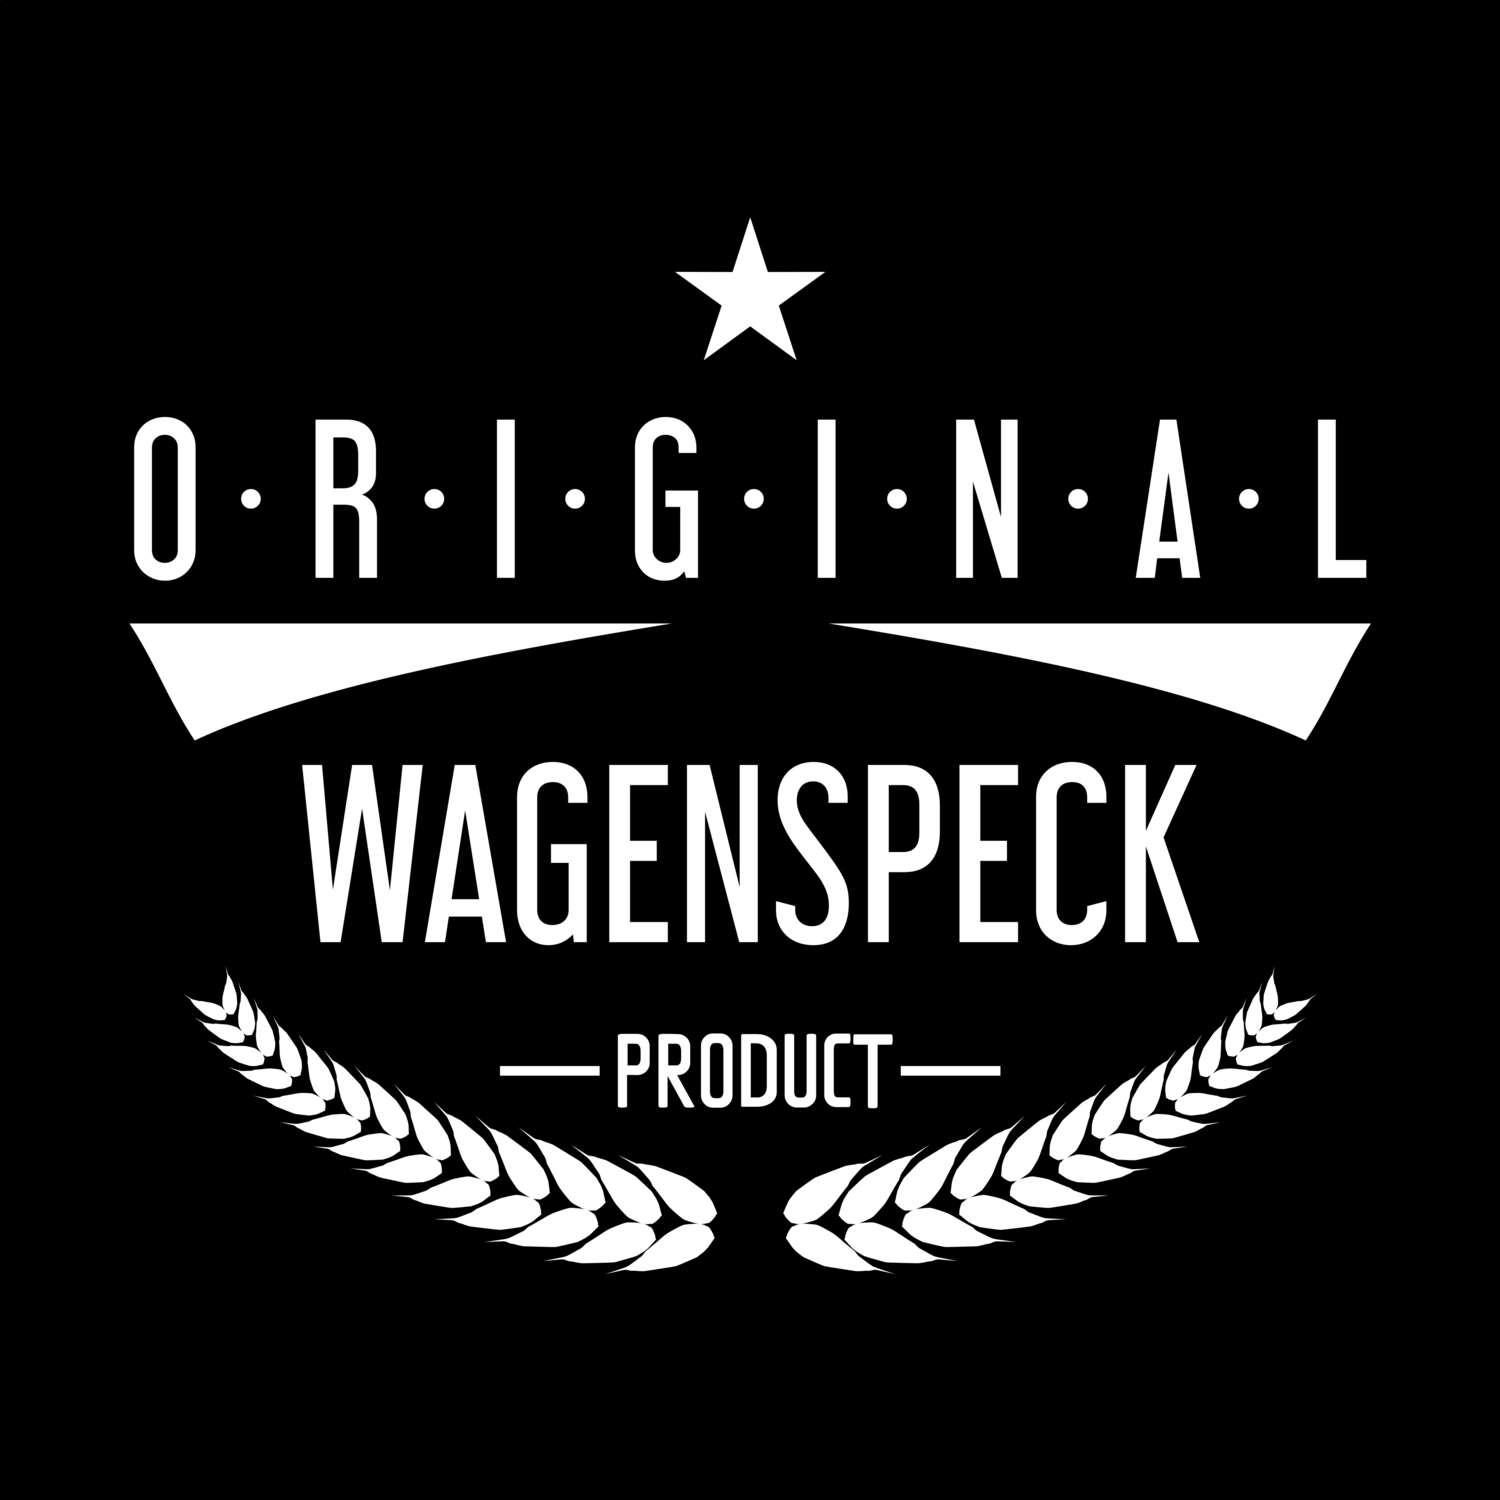 Wagenspeck T-Shirt »Original Product«